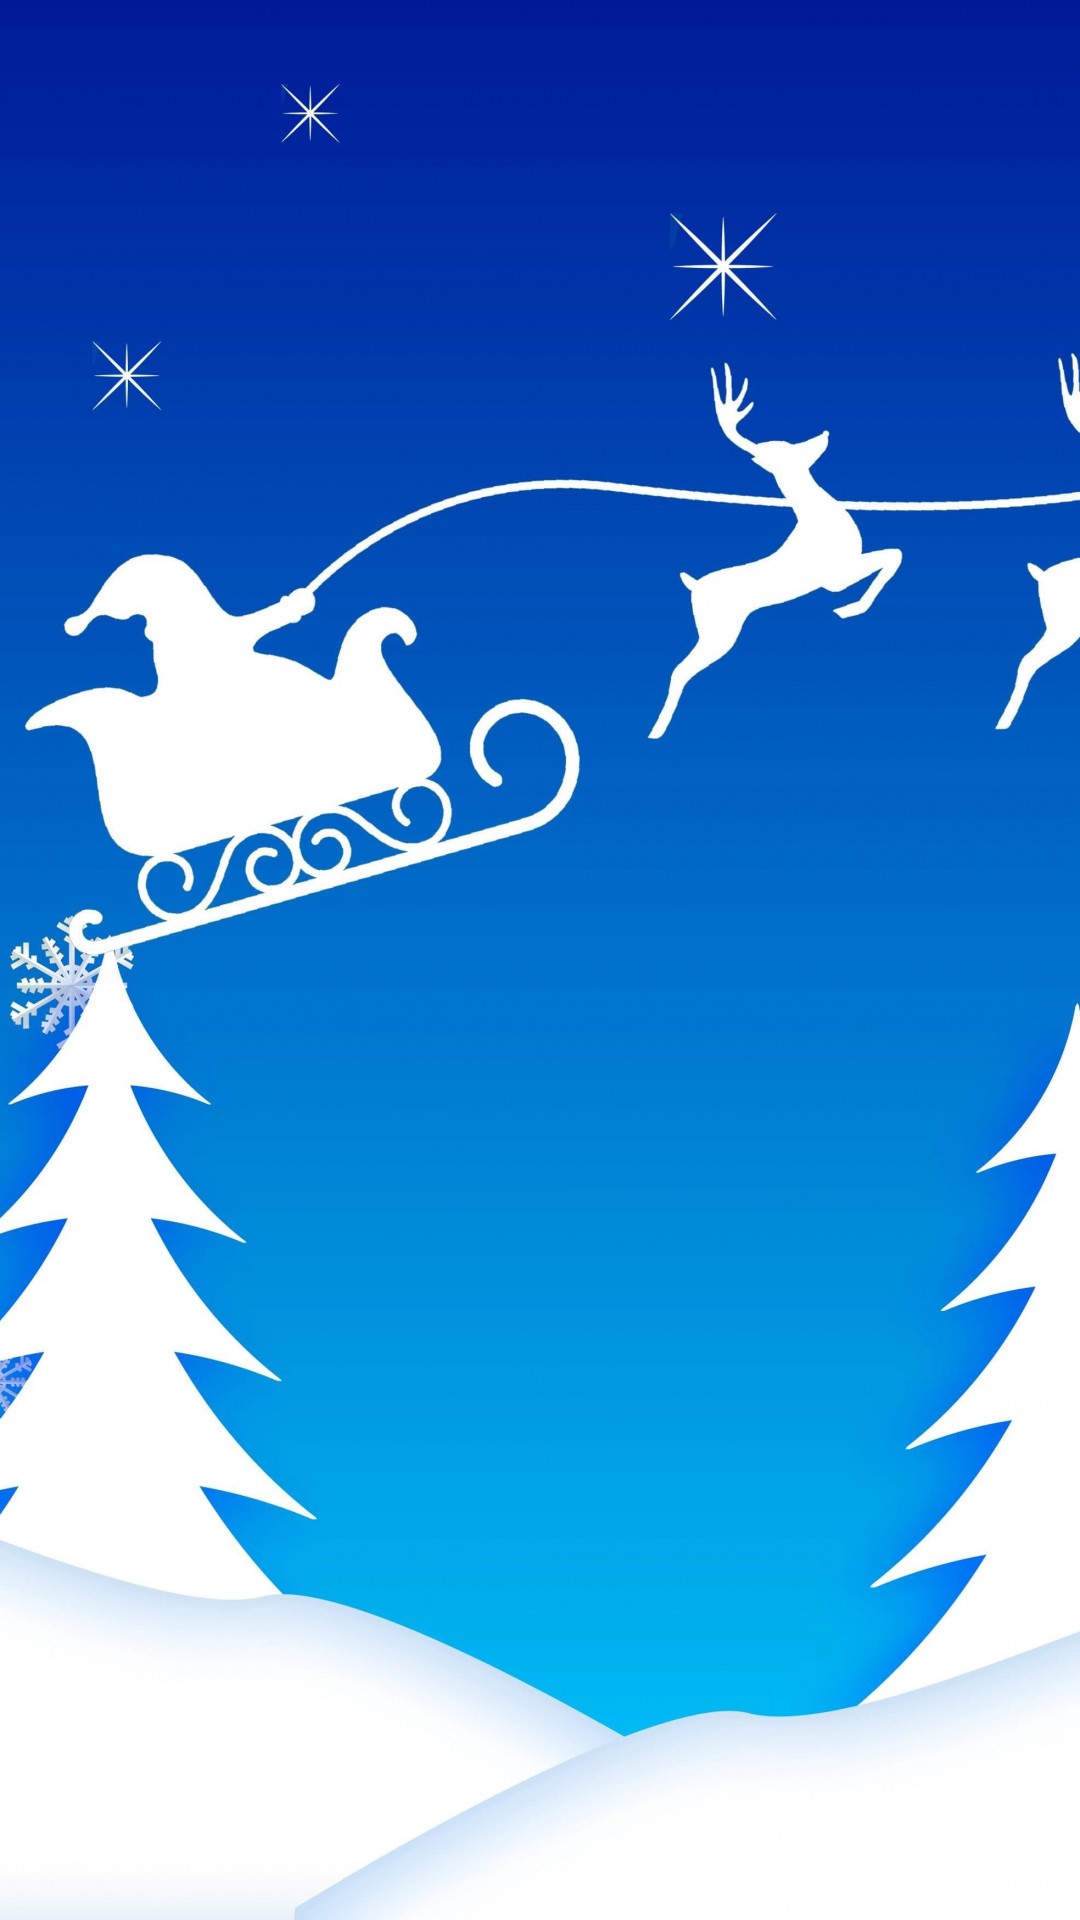 Santa’s Sleigh Illustration Wallpaper for Google Nexus 5